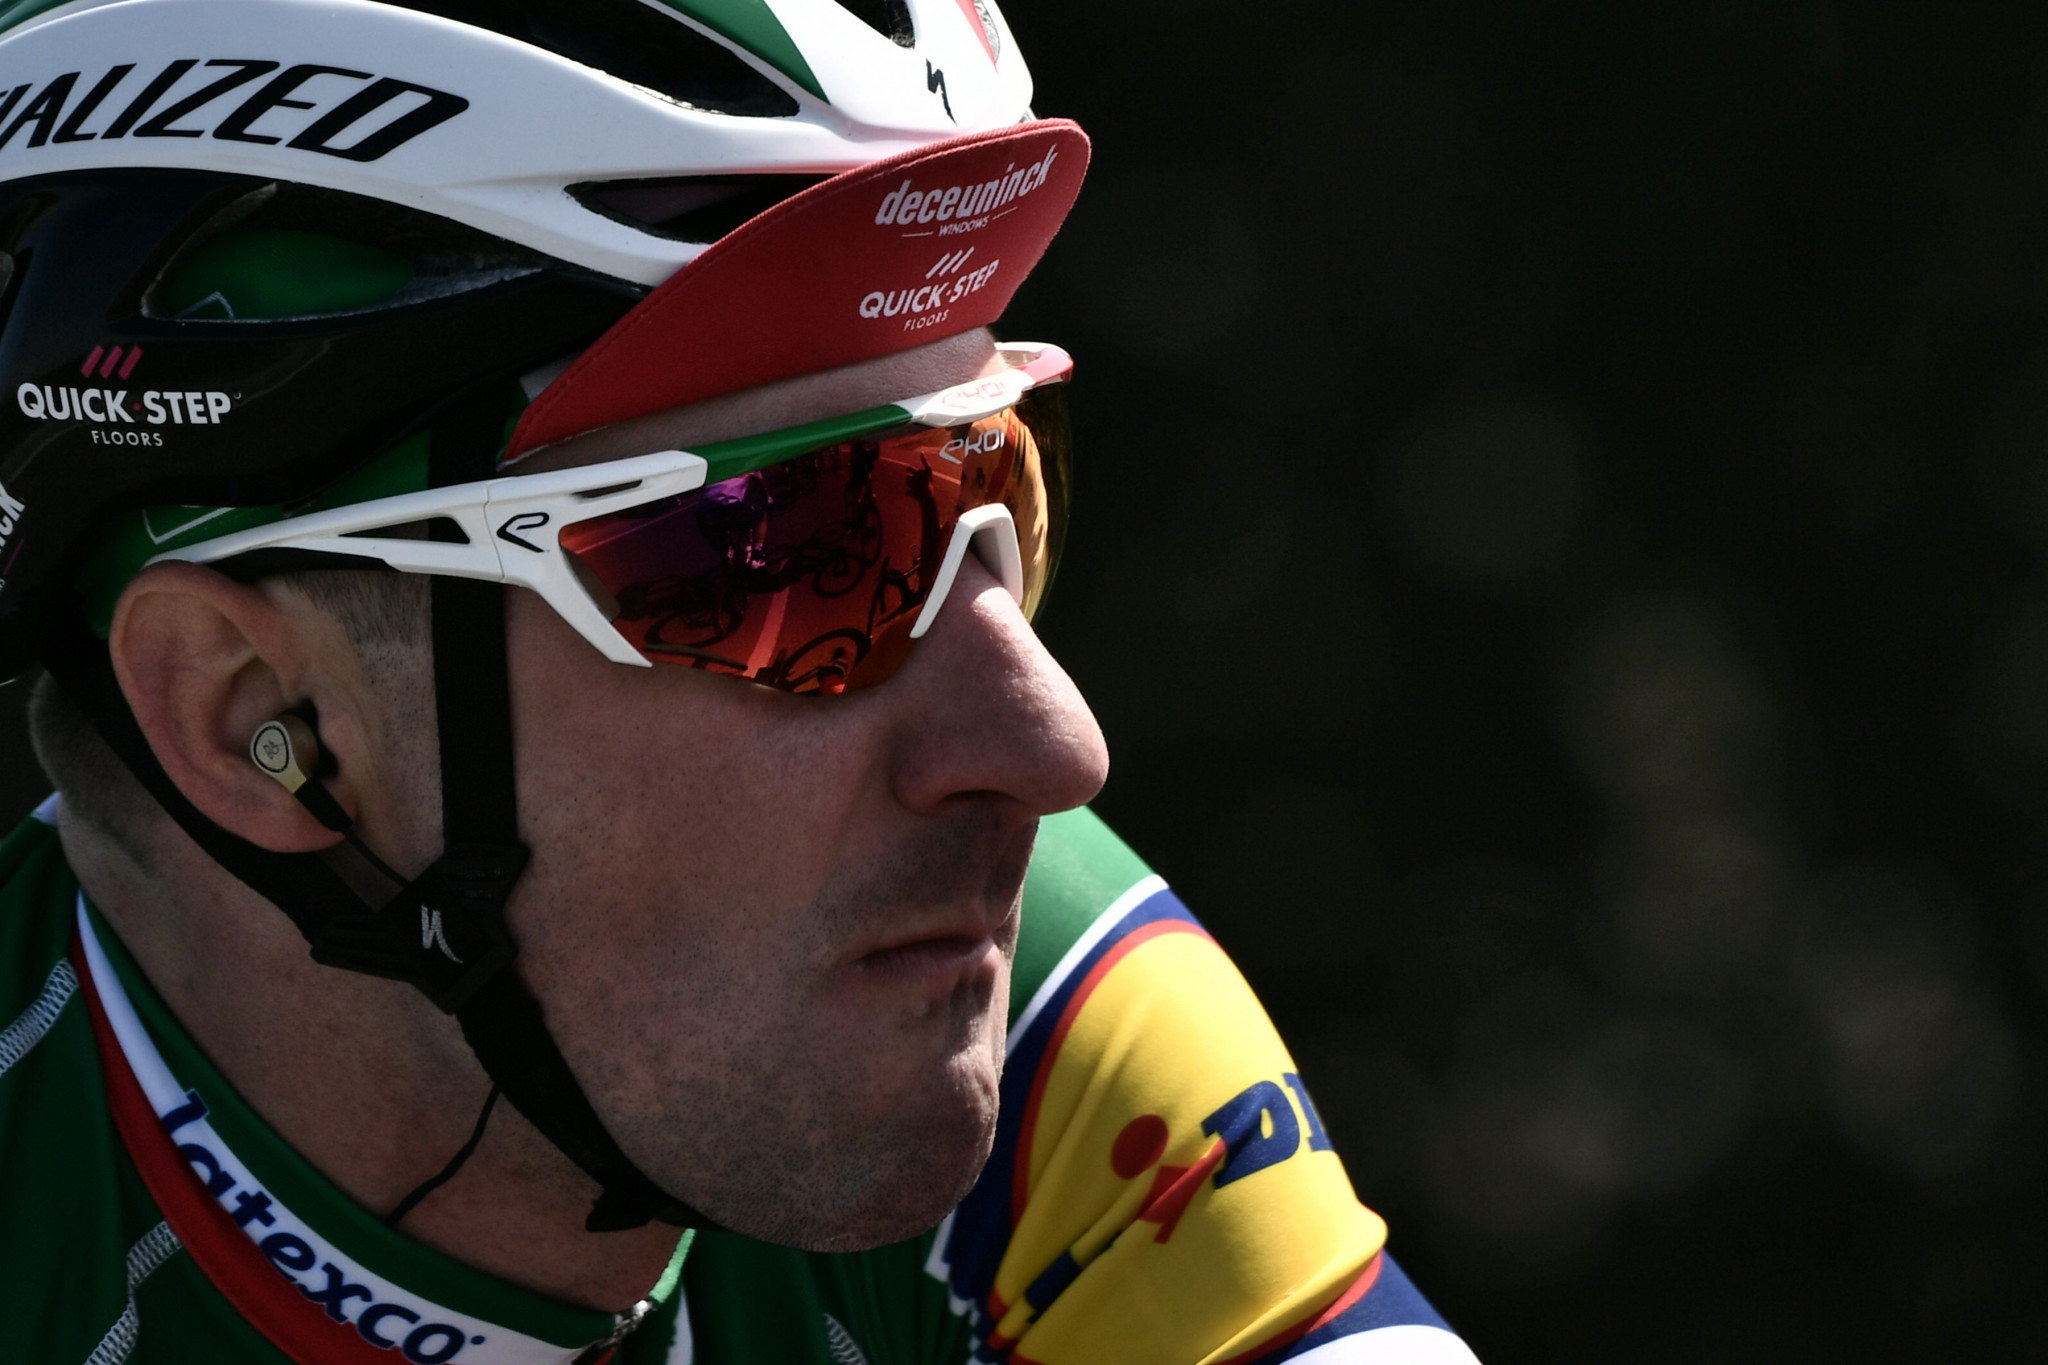 Viviani sprints to consecutive stage wins at Tour de Suisse 